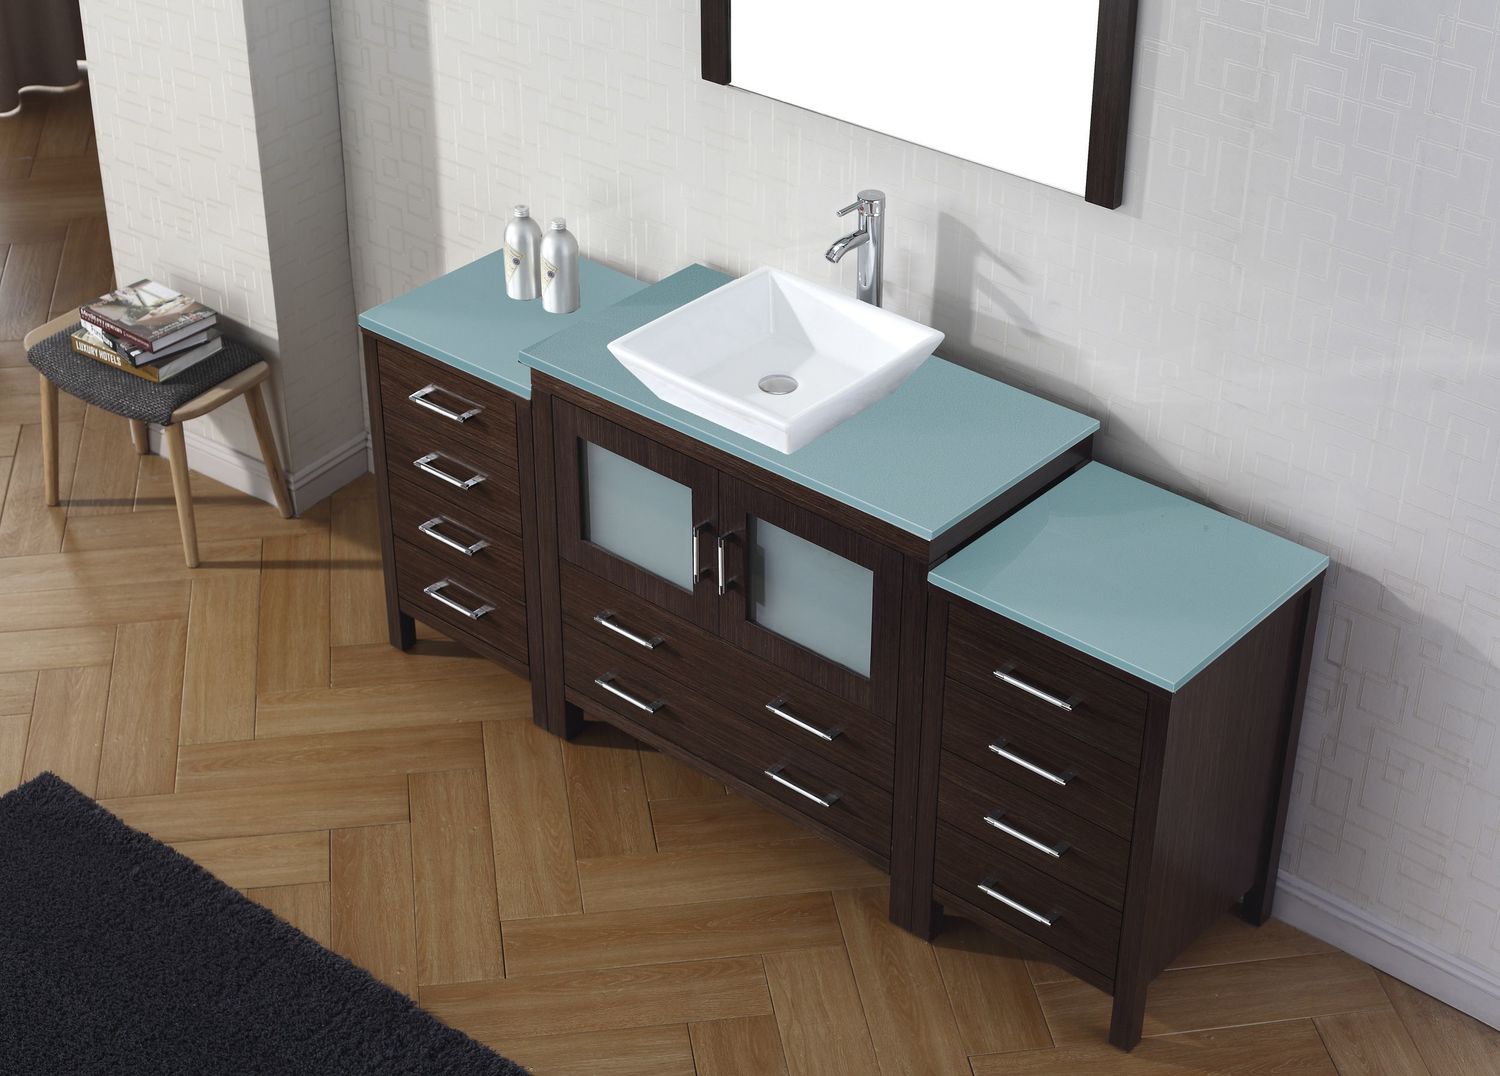 2 vanity bathroom ideas Virtu Bathroom Vanity Set Dark Modern